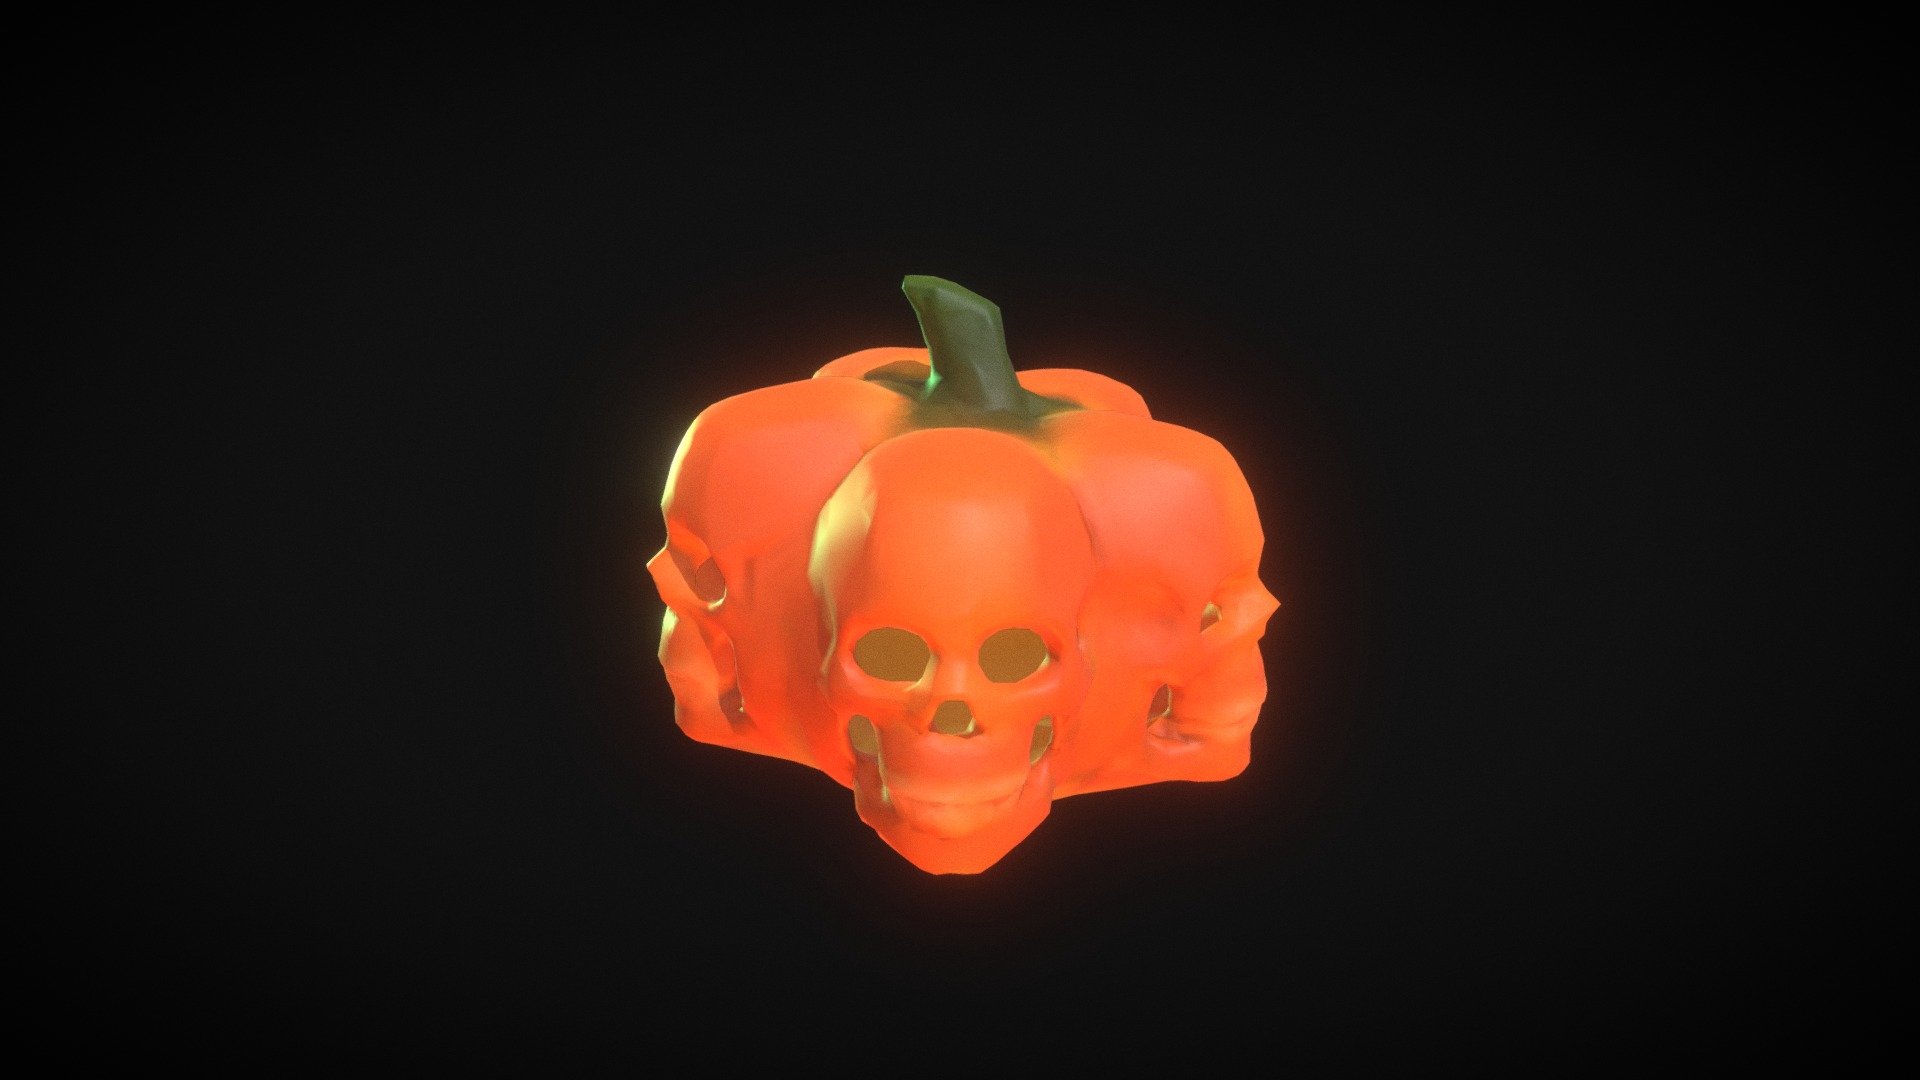 5 Skull Pumpkin, Jack-o-lantern